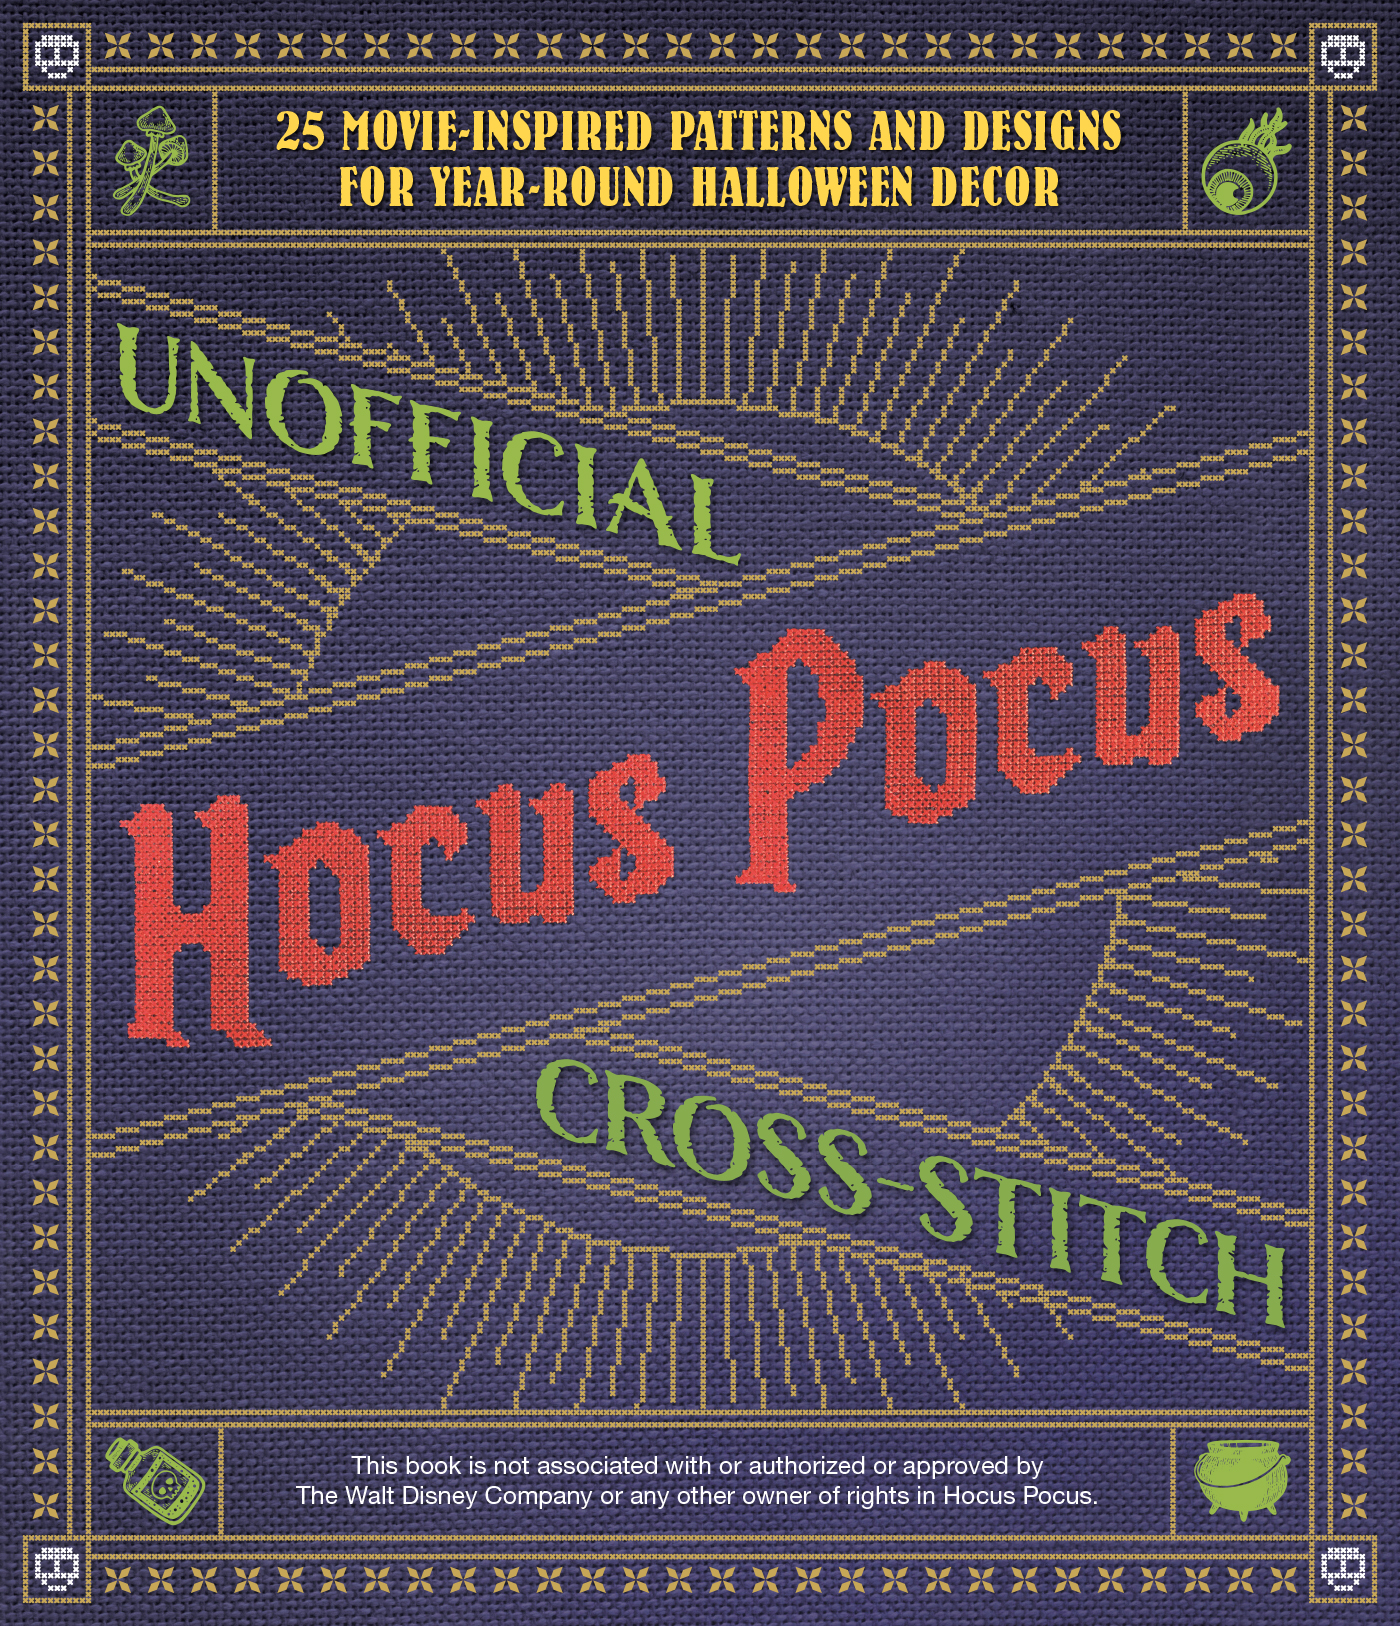 Unofficial Hocus Pocus Cross-Stitch